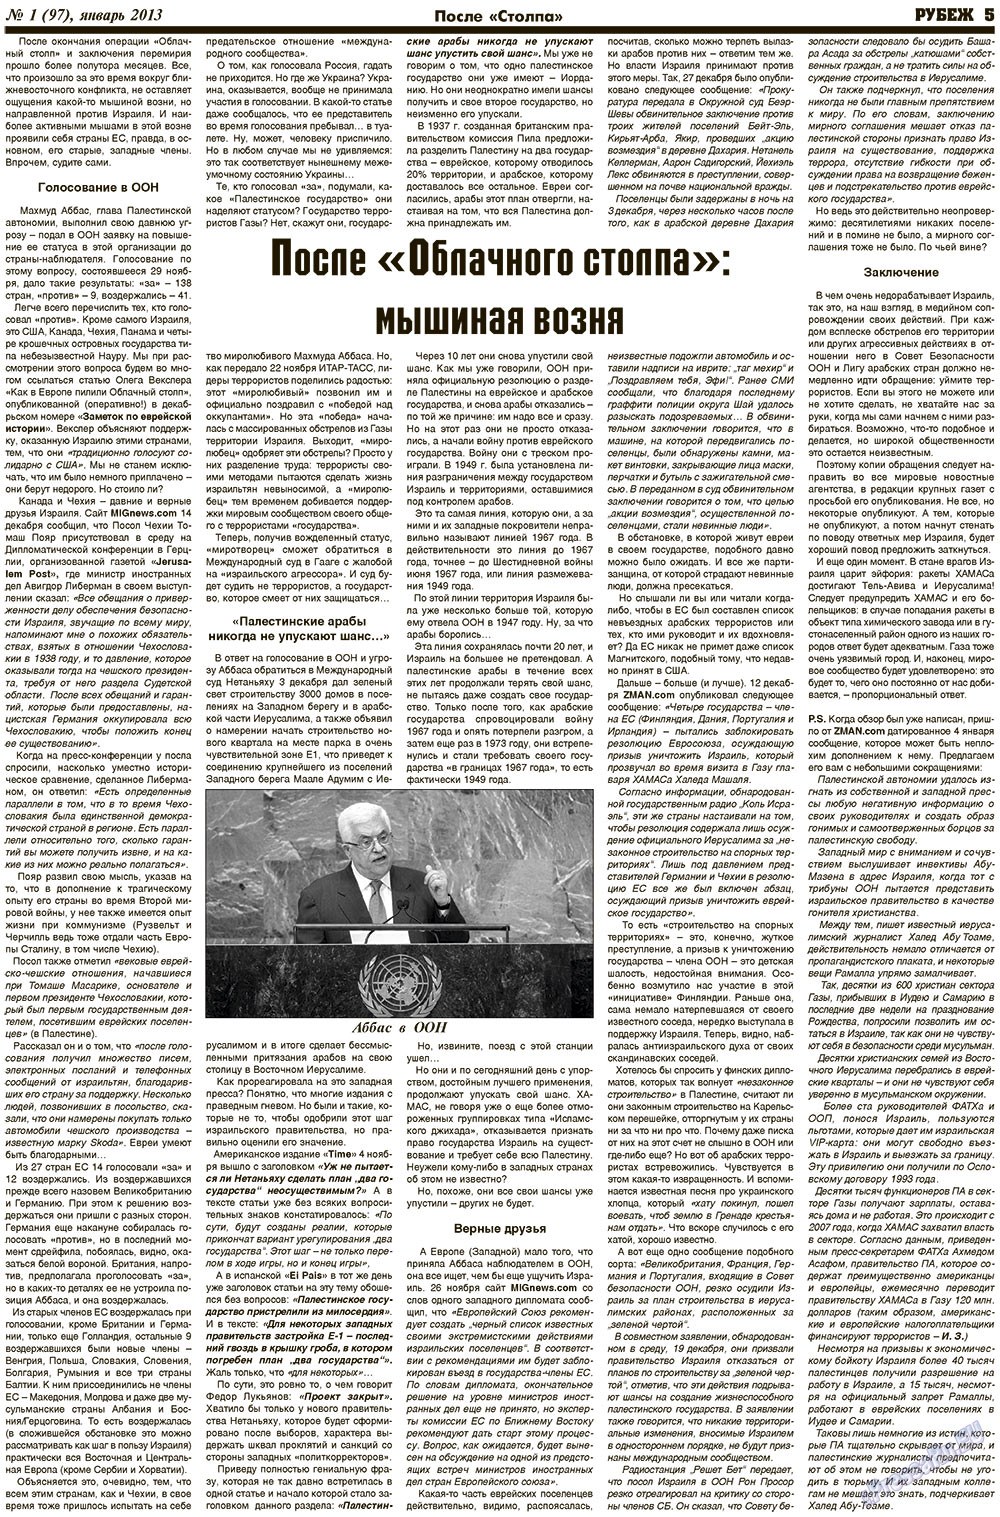 Рубеж (газета). 2013 год, номер 1, стр. 5